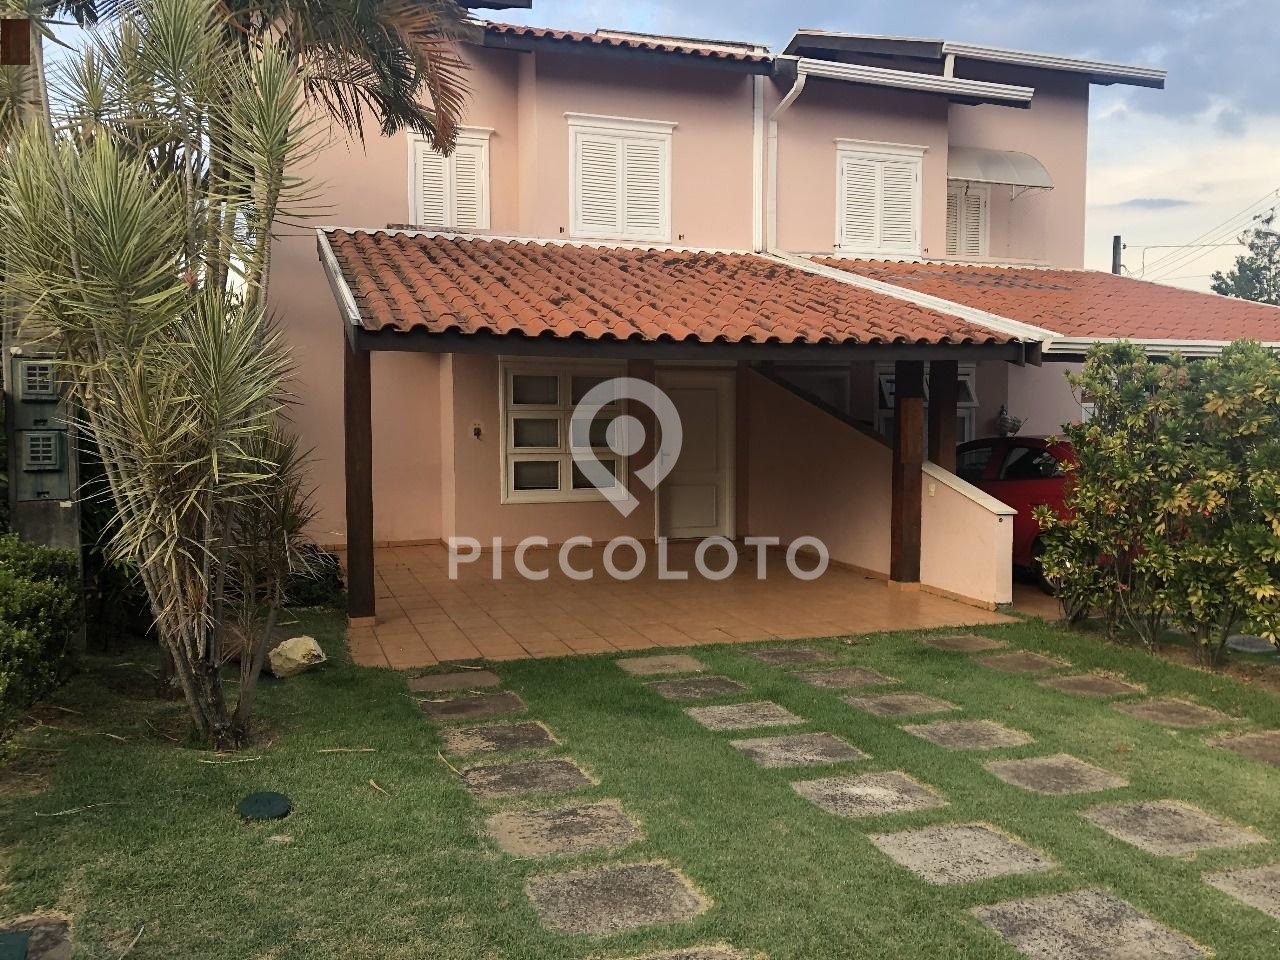 Piccoloto - Casa à venda no Parque Imperador em Campinas